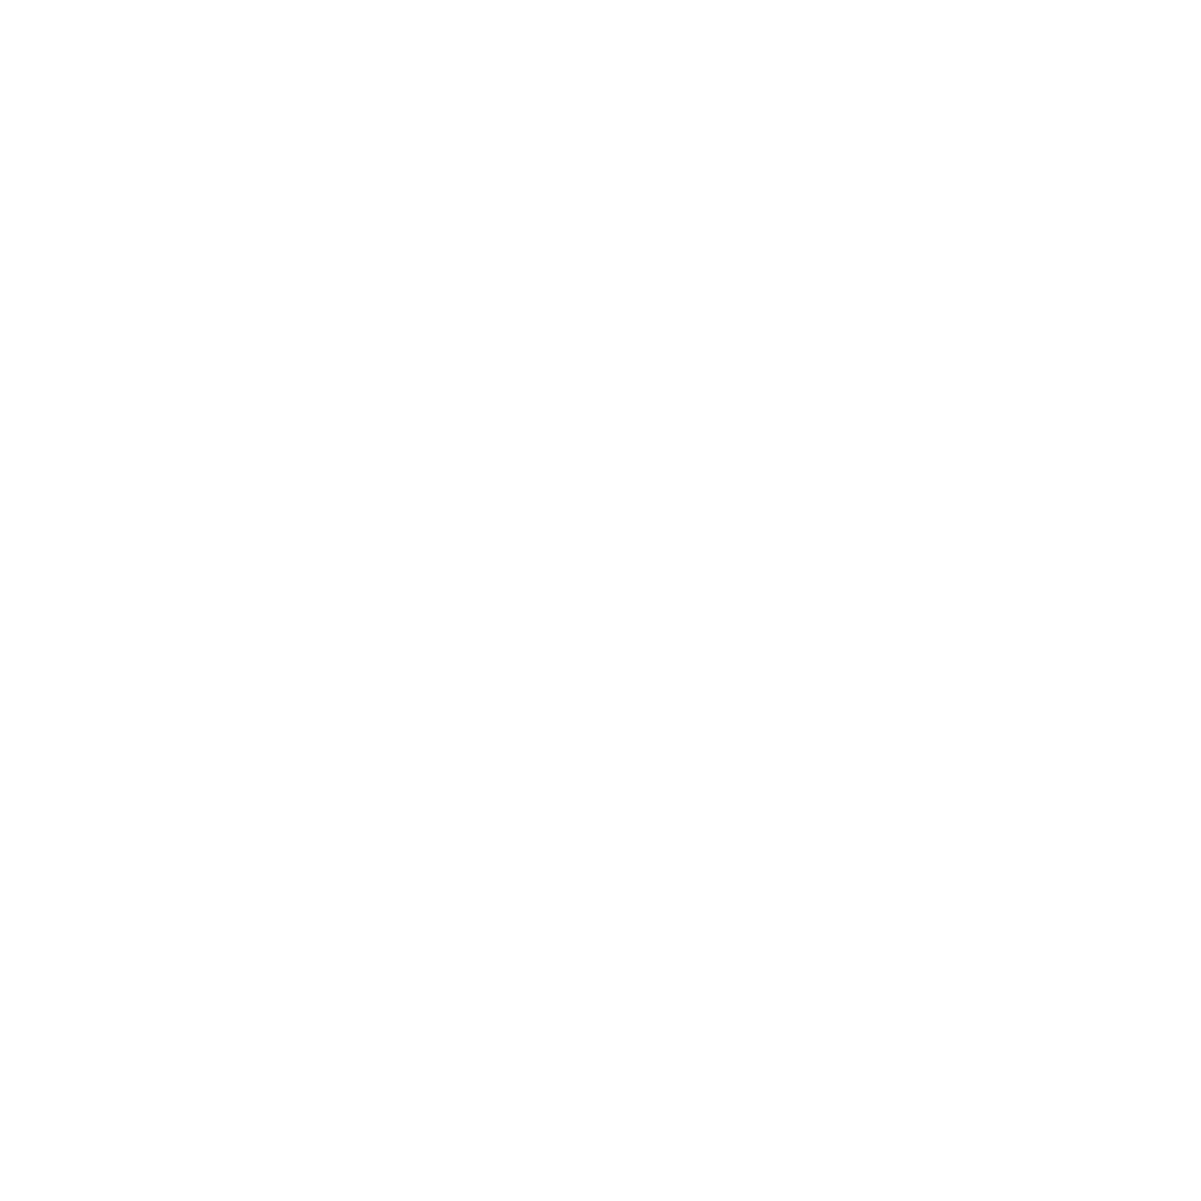 Carrollton Station